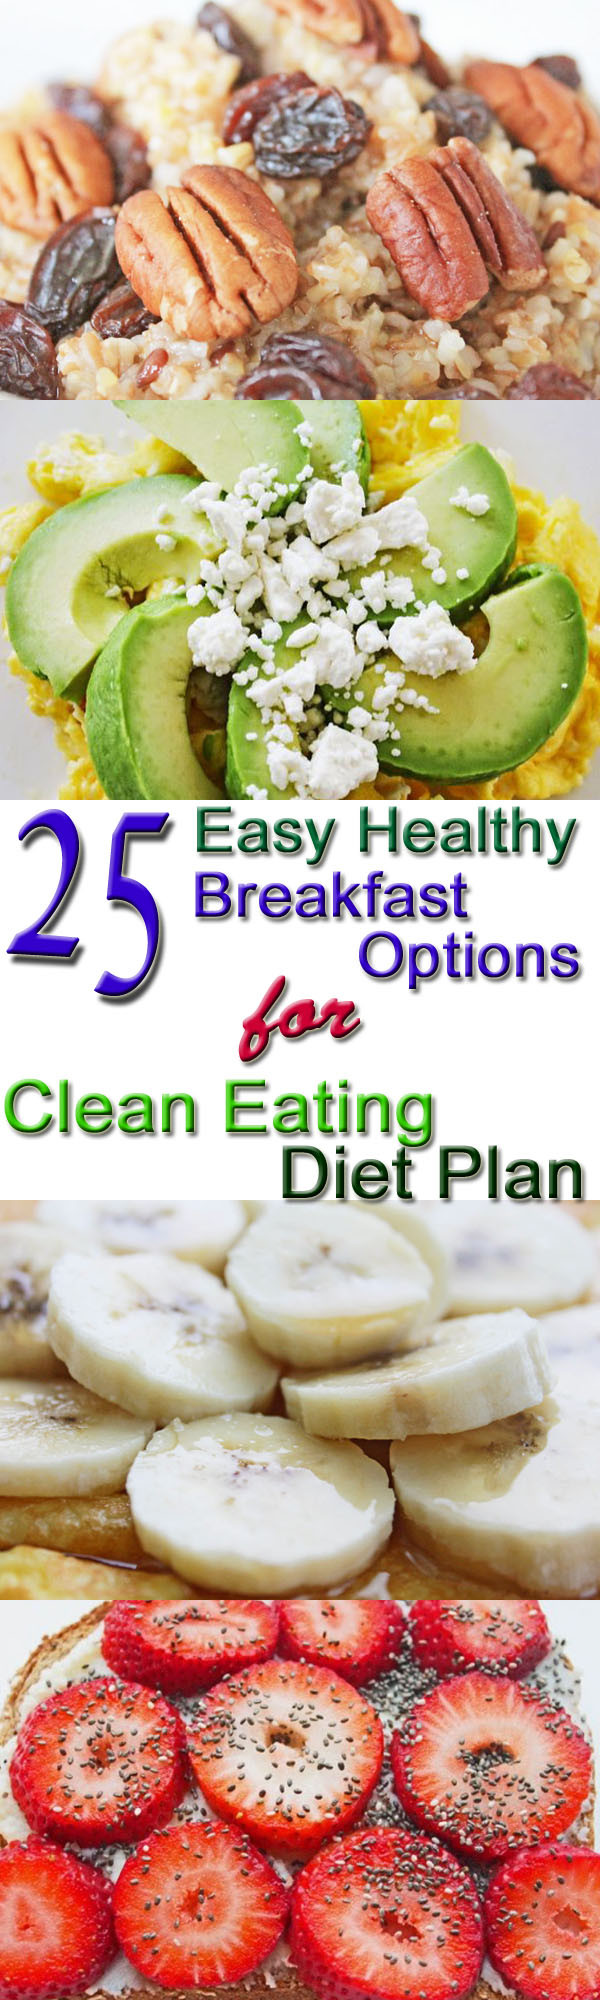 Easy Healthy Breakfast Ideas
 25 Healthy Breakfast Options